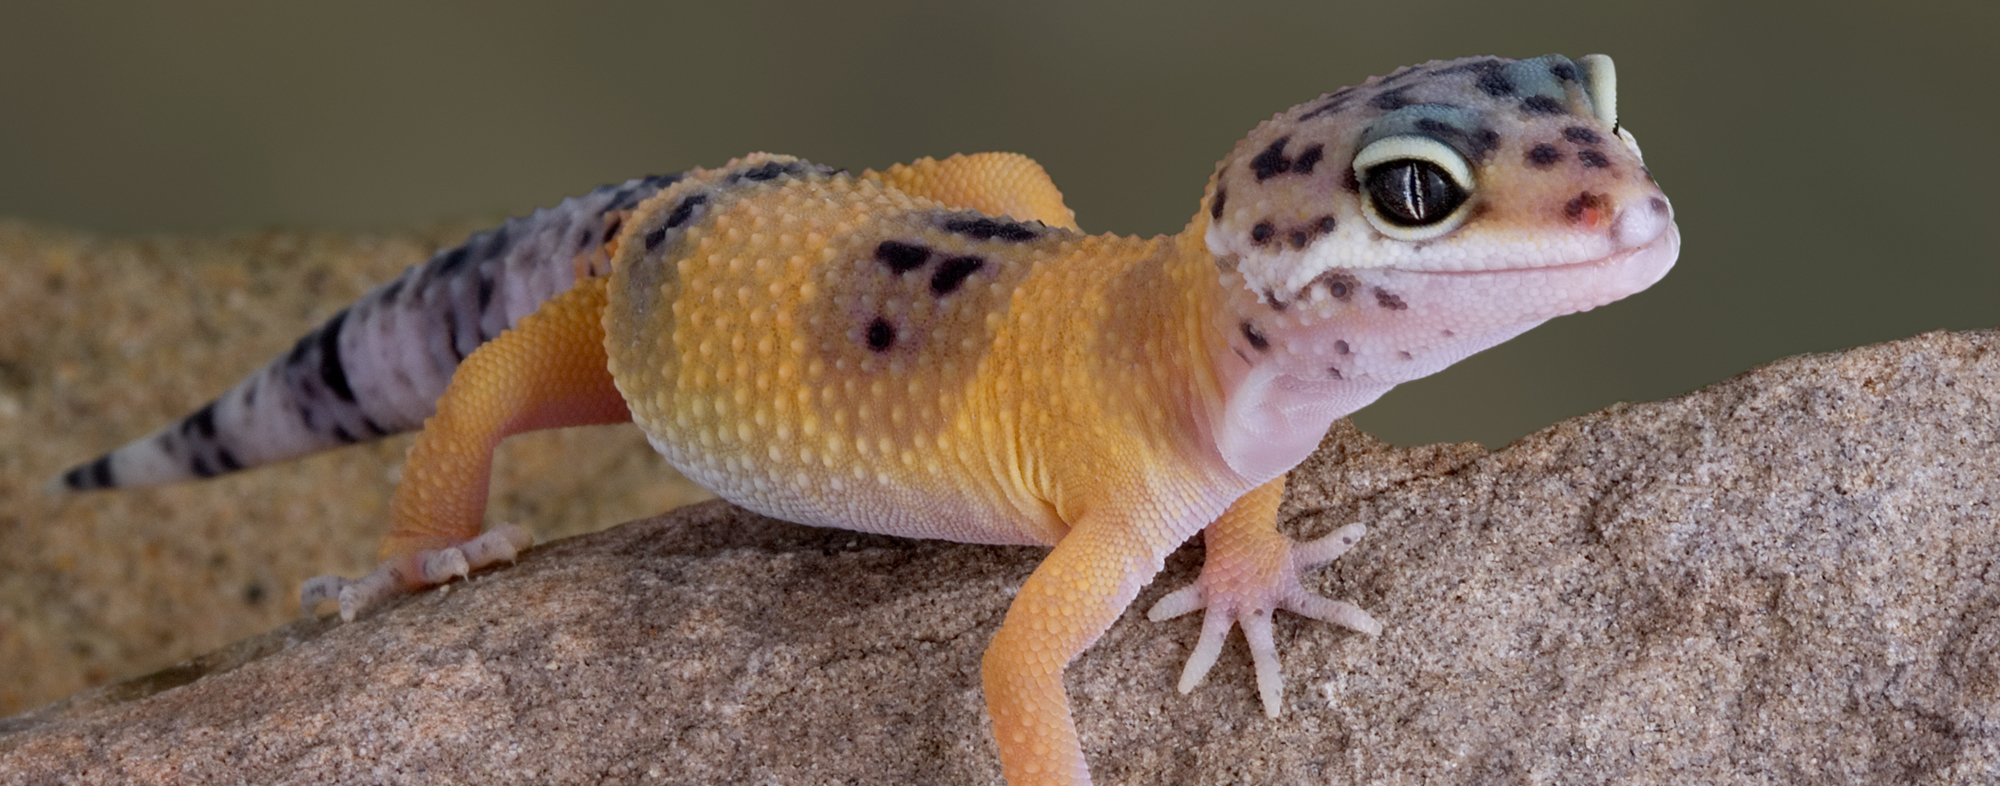 Geckos As Pets Hartz,Espresso And Coffee Maker Combination